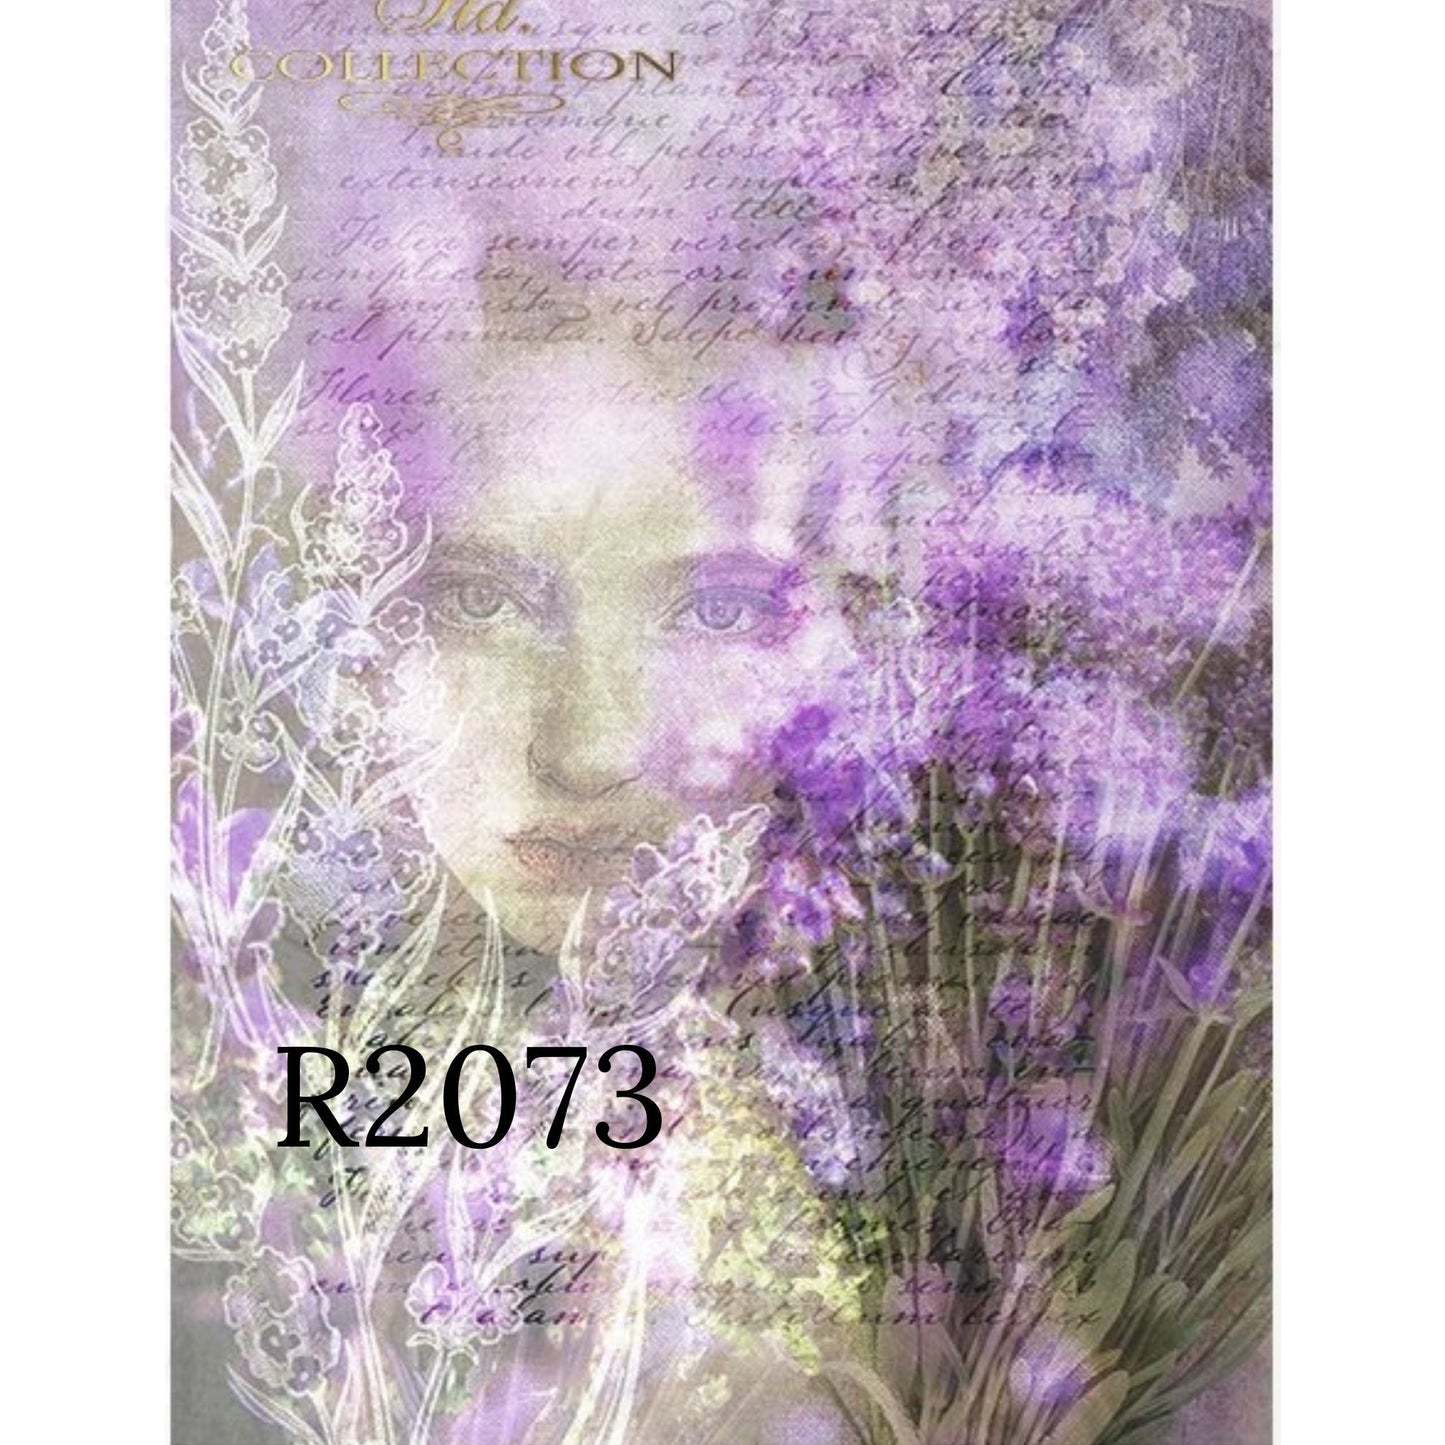 R2073 - Decoupage Rice Paper - woman's face, plants, lavender